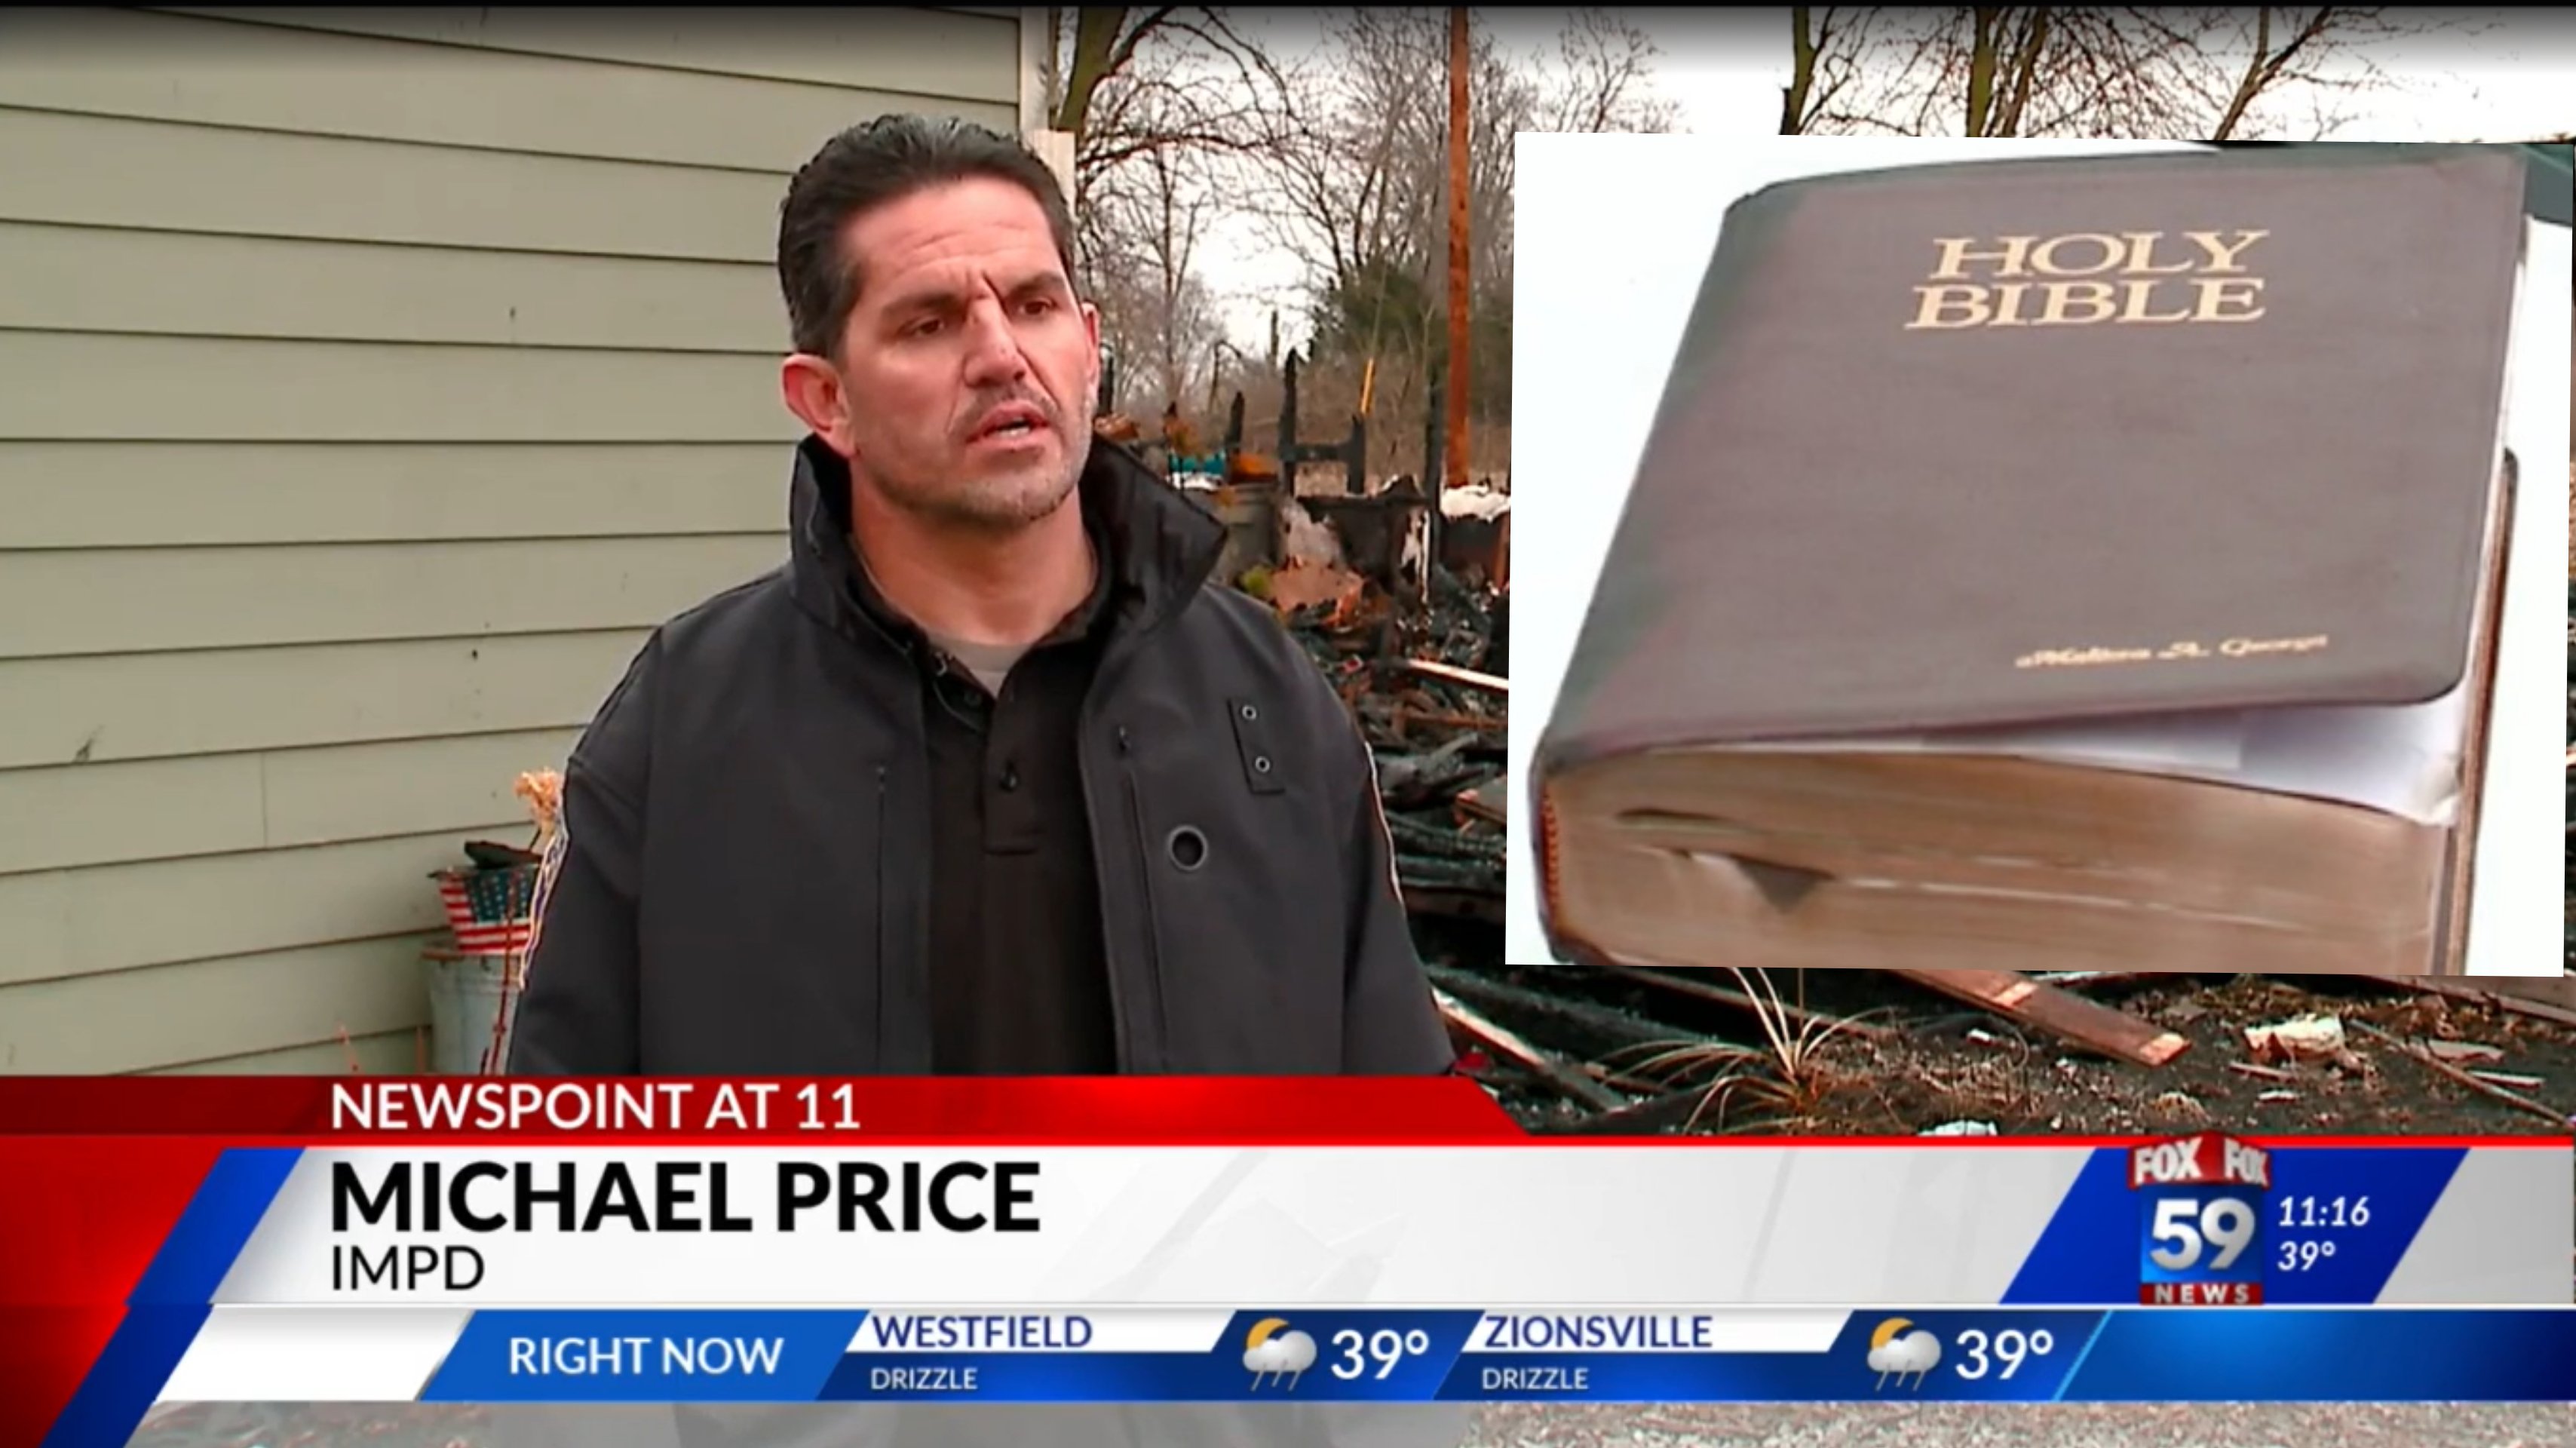 Bíblia é encontrada intacta após incêndio em casa de policial